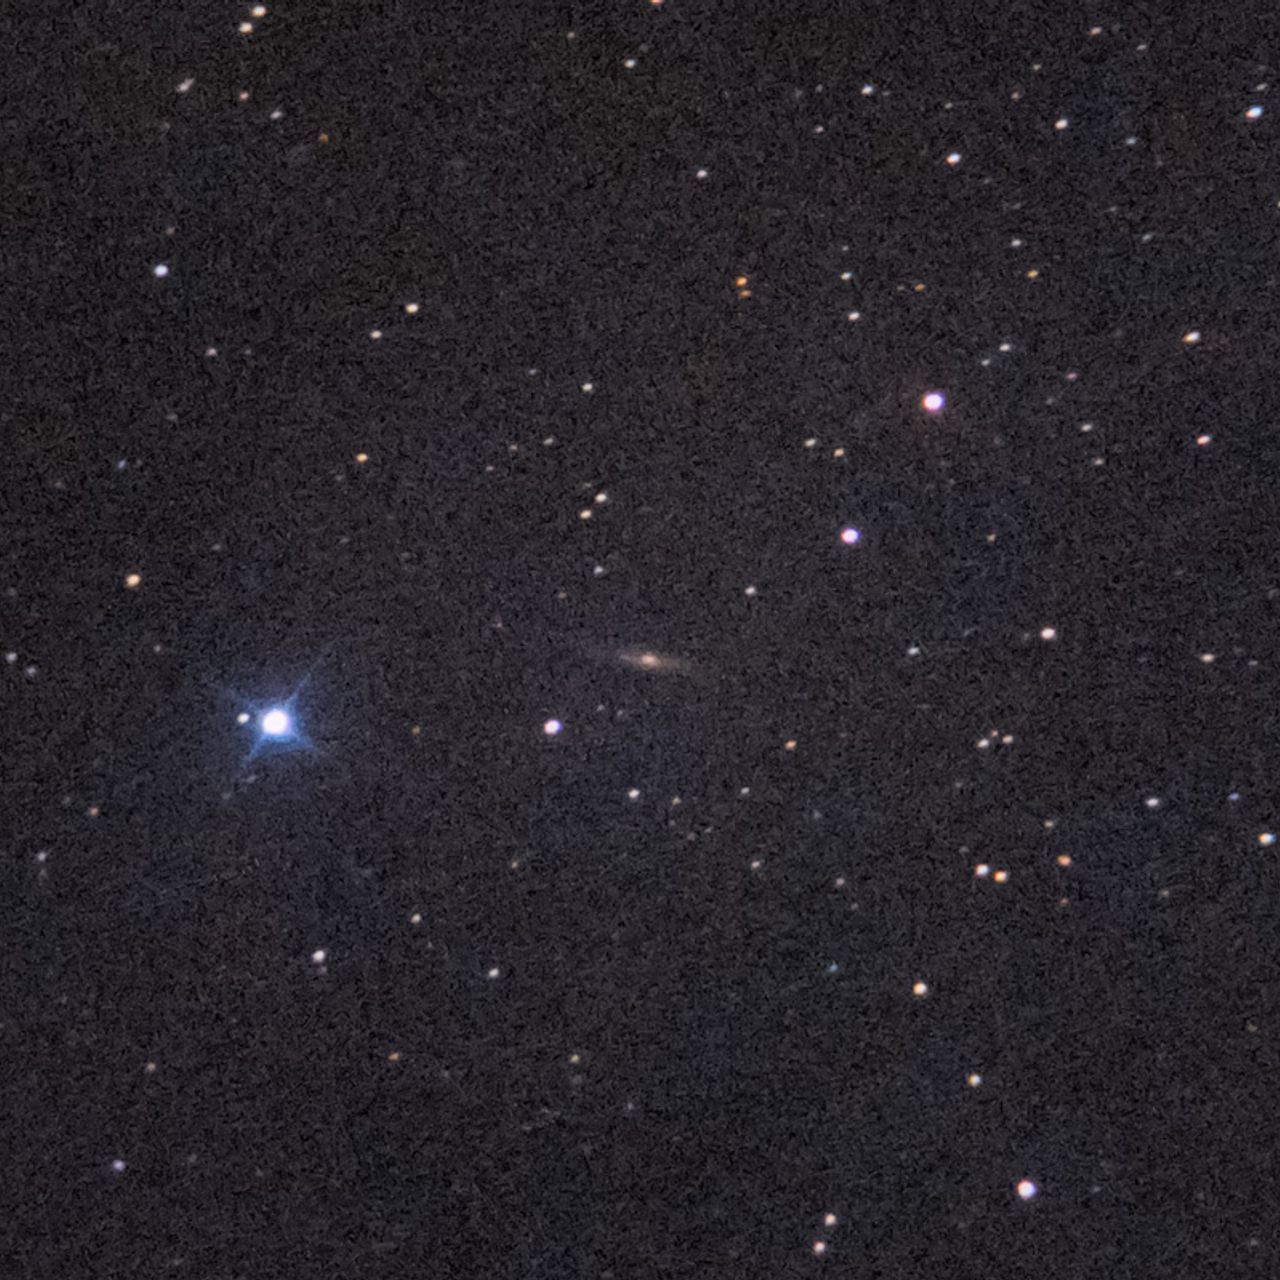 NGC2424